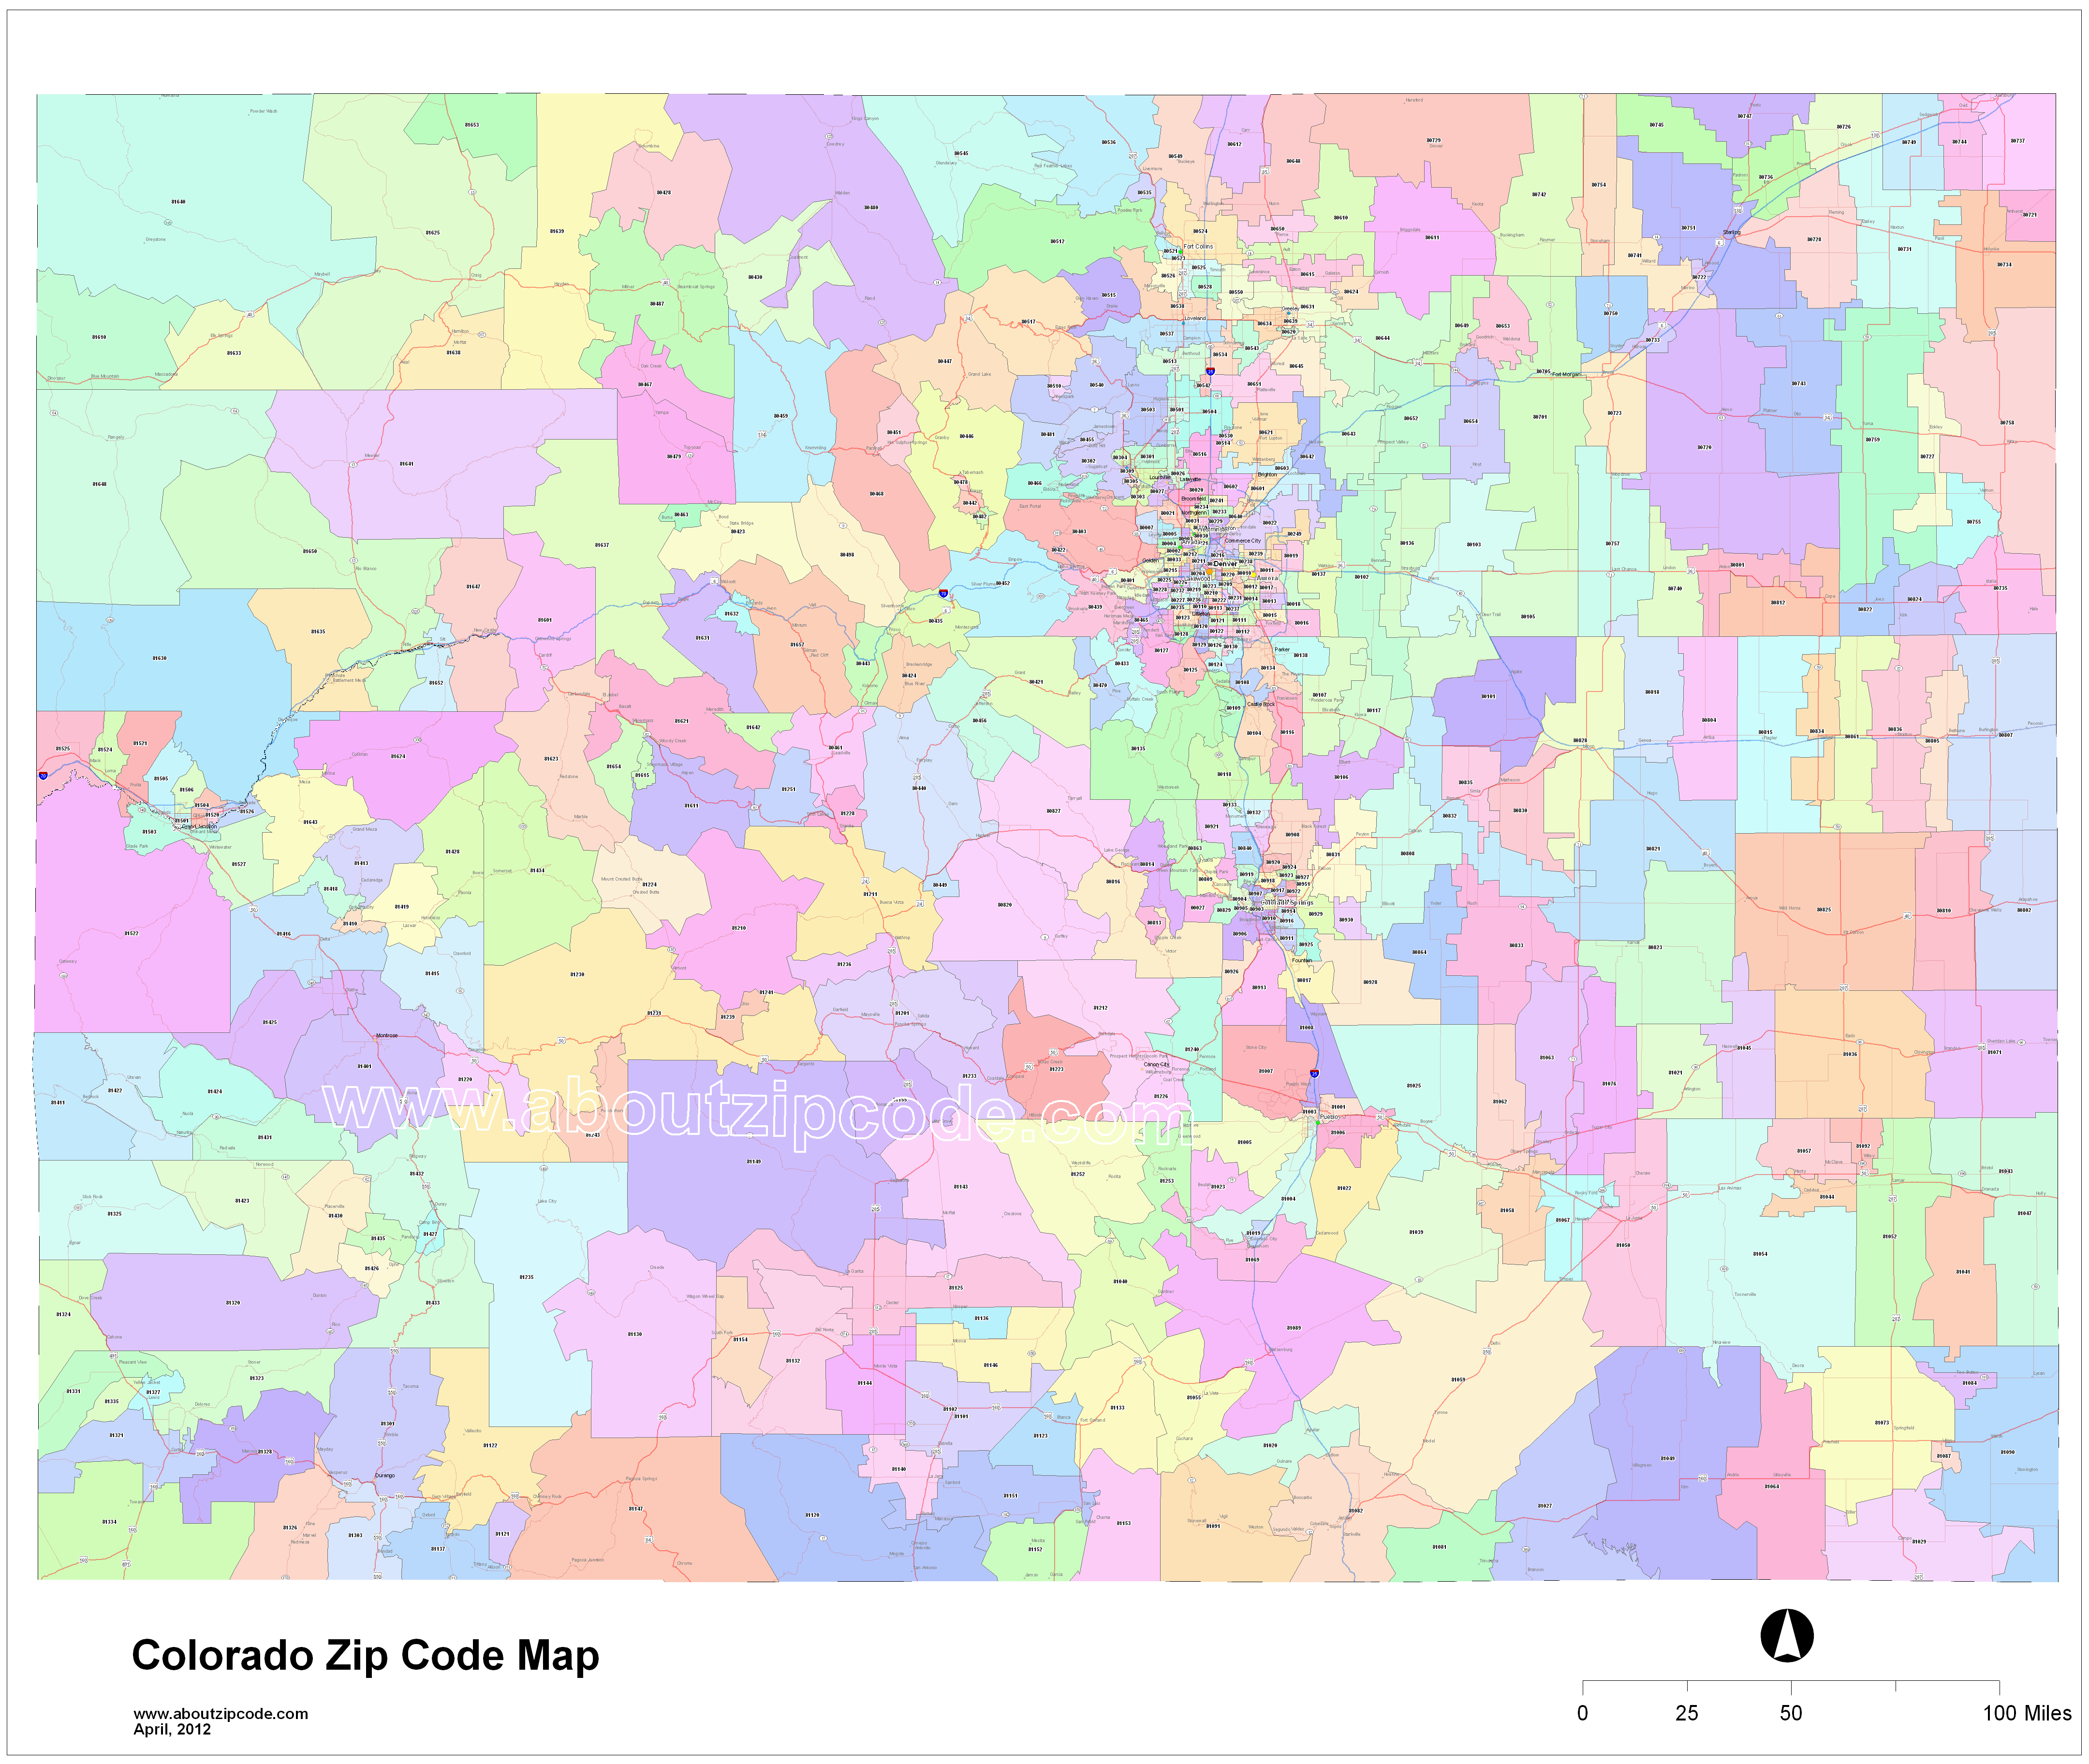 Colorado Zip Code Maps Free Colorado Zip Code Maps